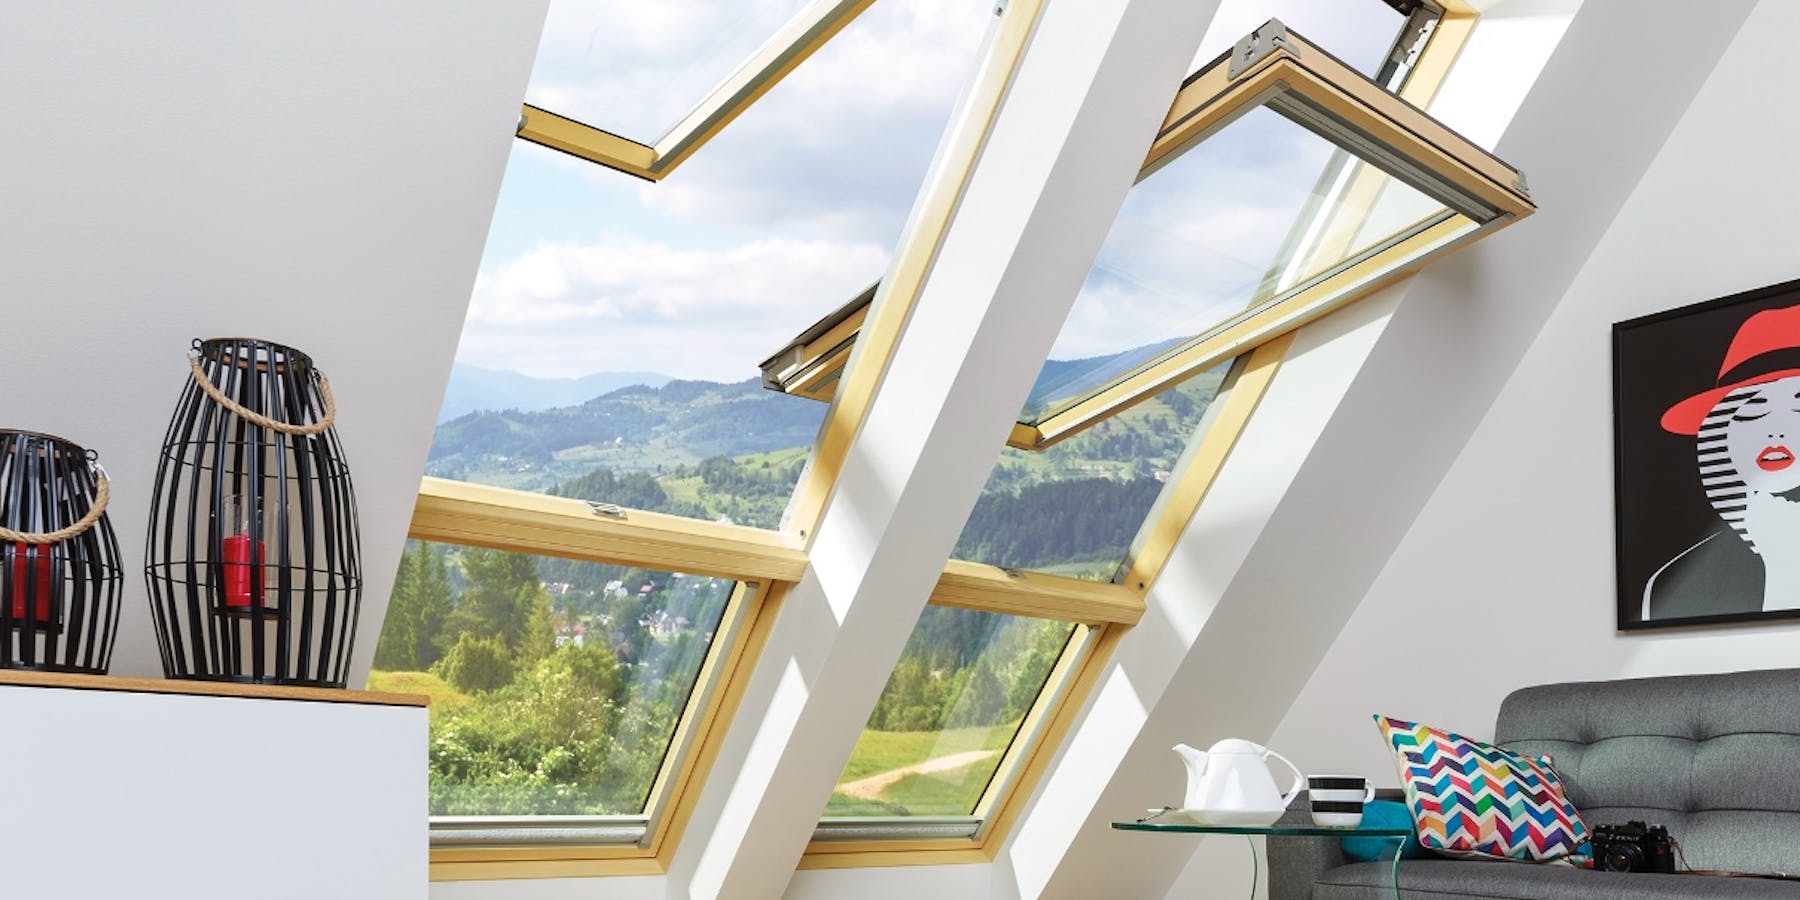 Mögliche Materialien bei 2-fach verglasten Dachfenstern